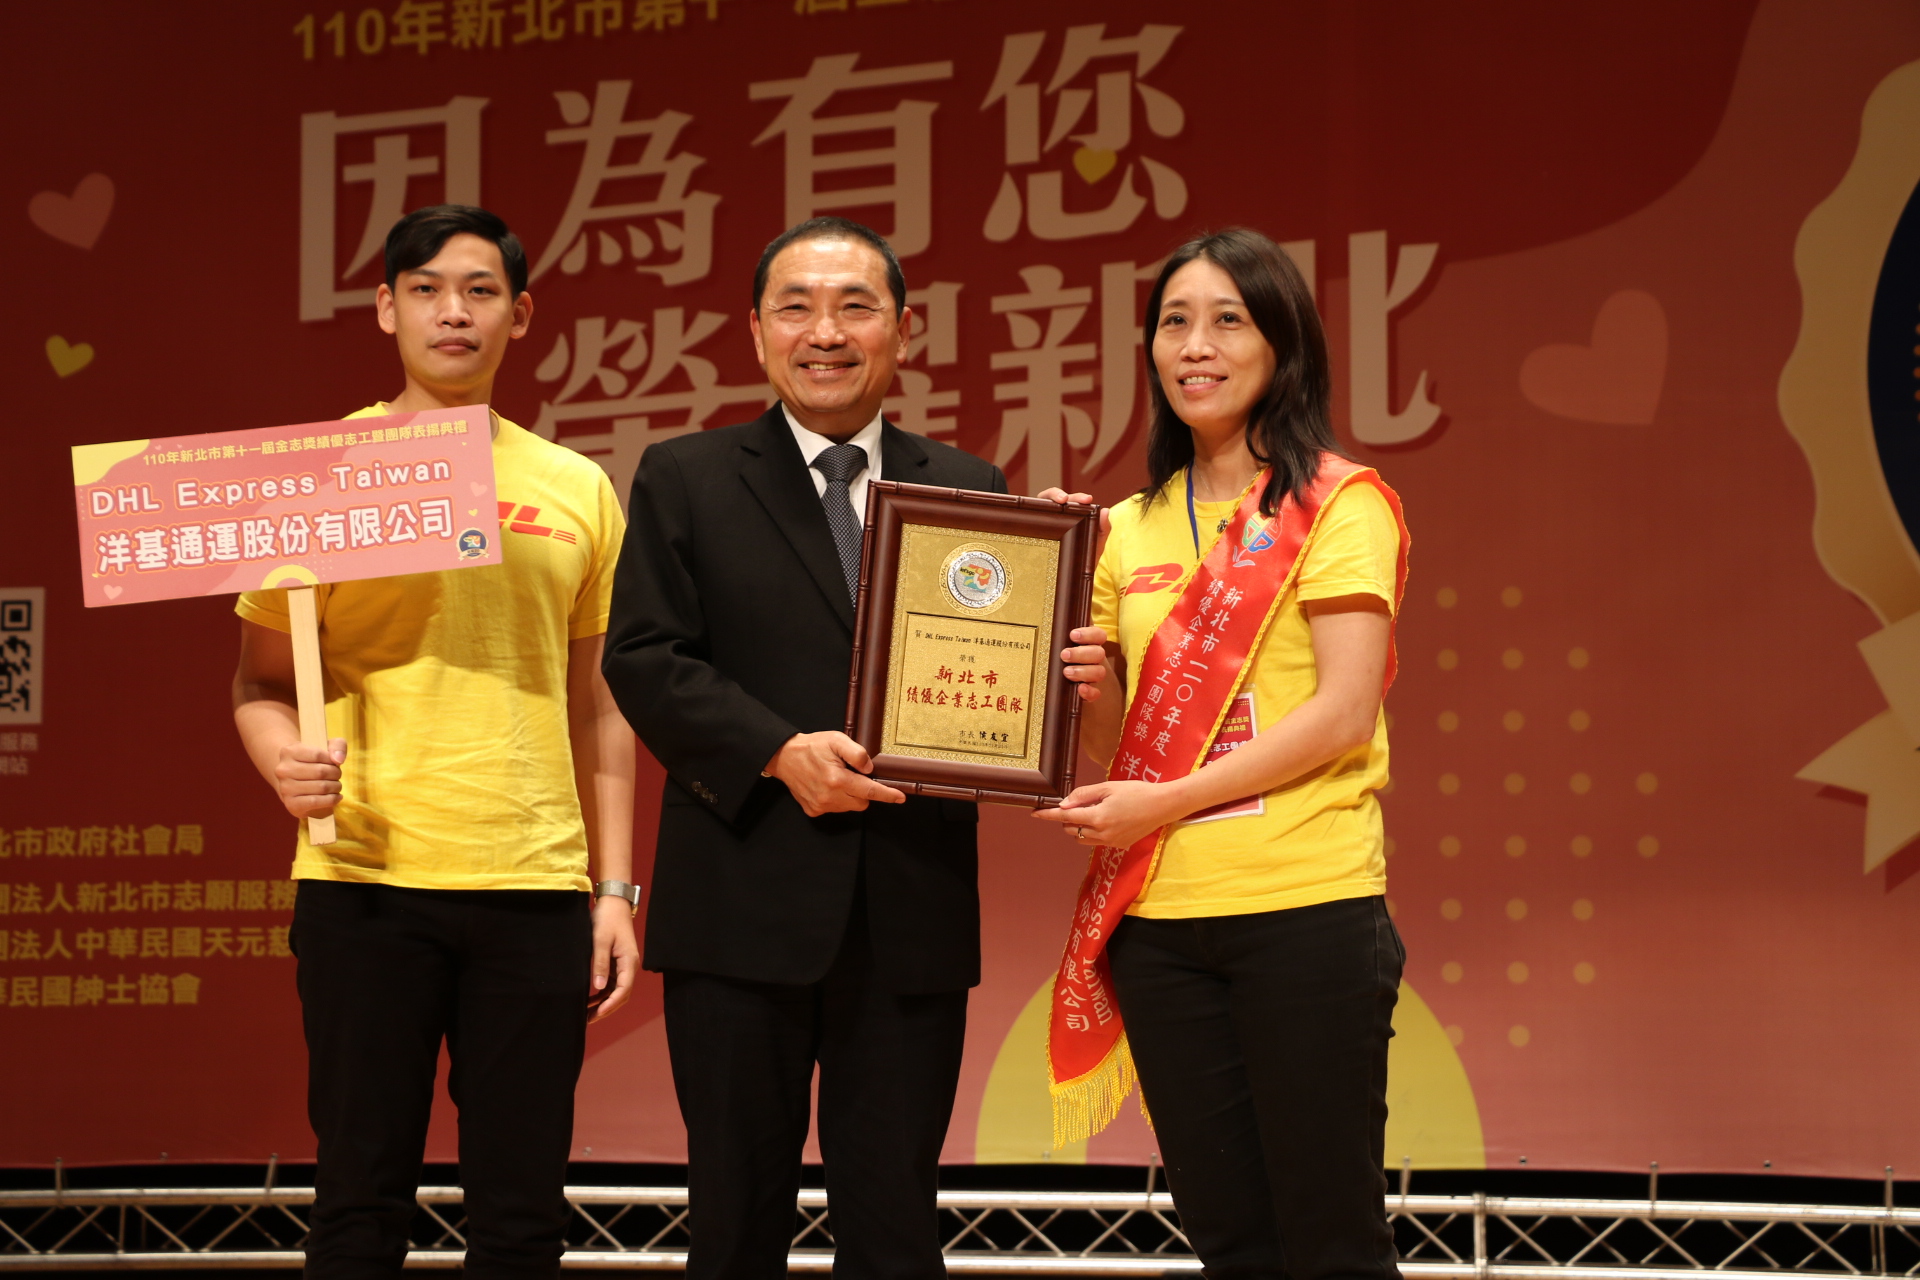 侯友宜頒獎表揚獲得績優企業志工團隊的DHL國際快遞公司